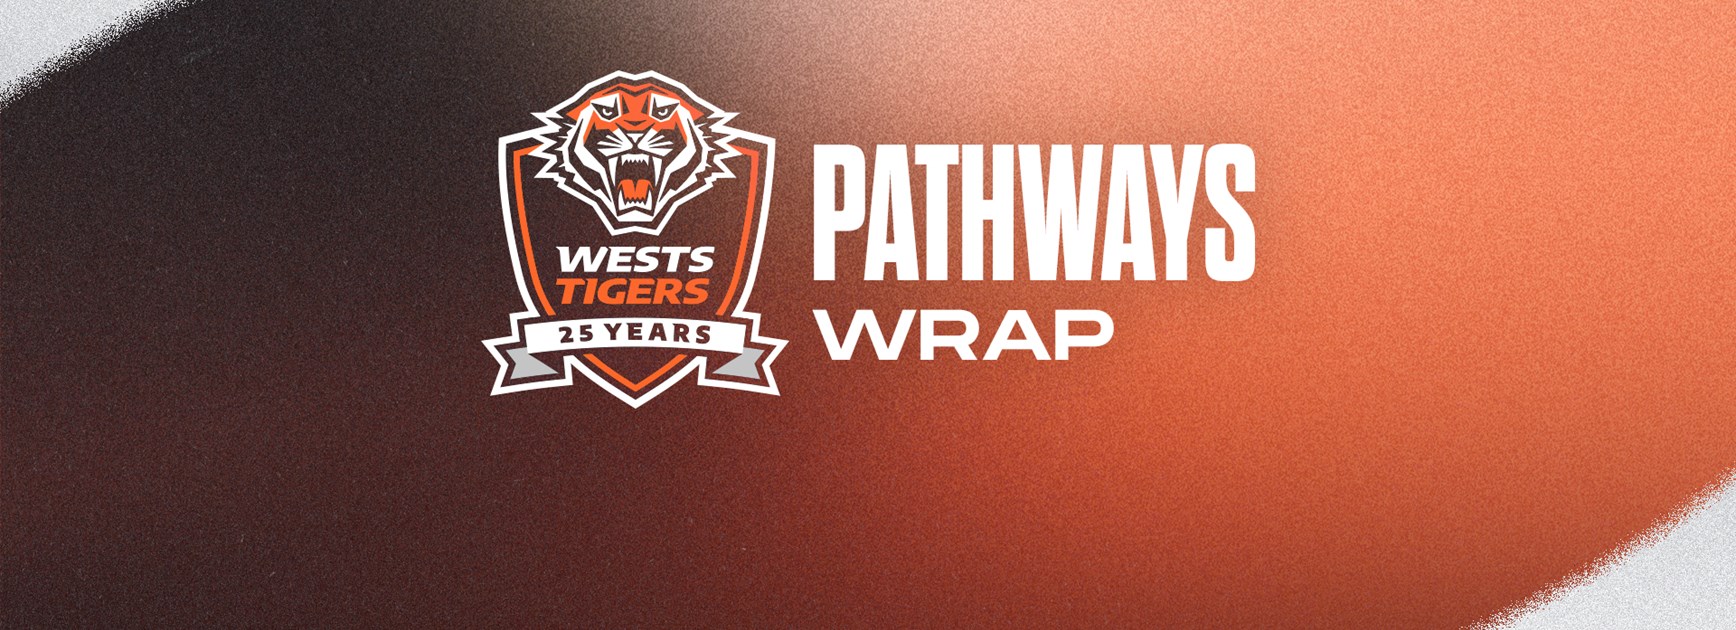 Pathways Wrap: Under 17s Semi Finals